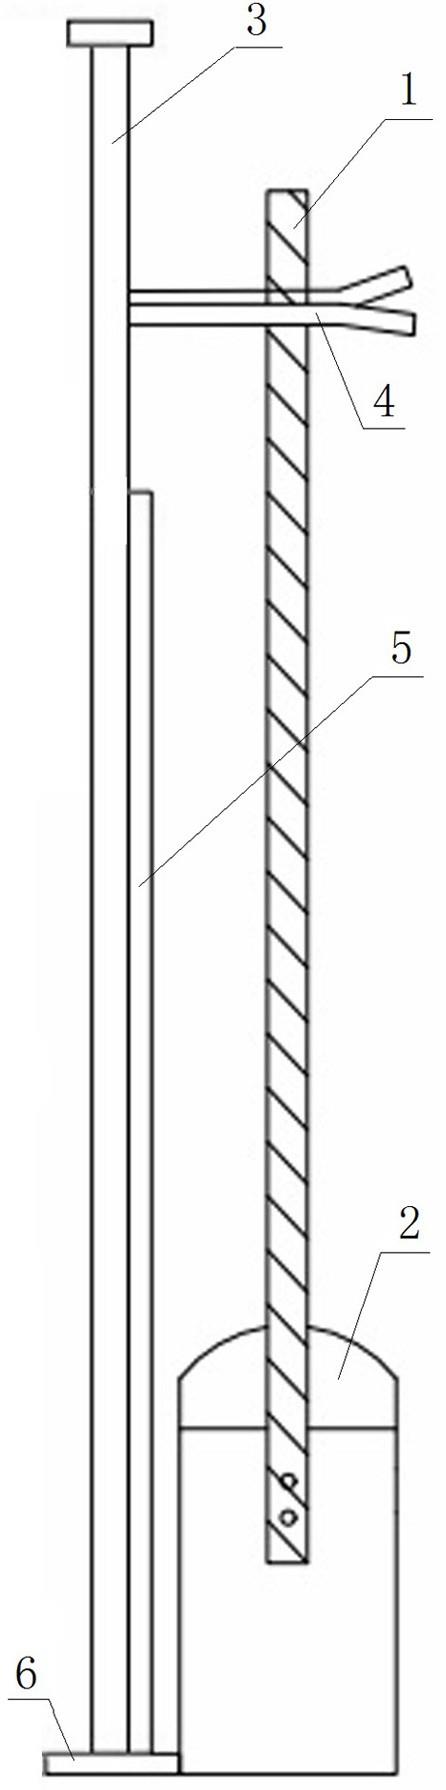 铁路道口抗风栏木机的制作方法